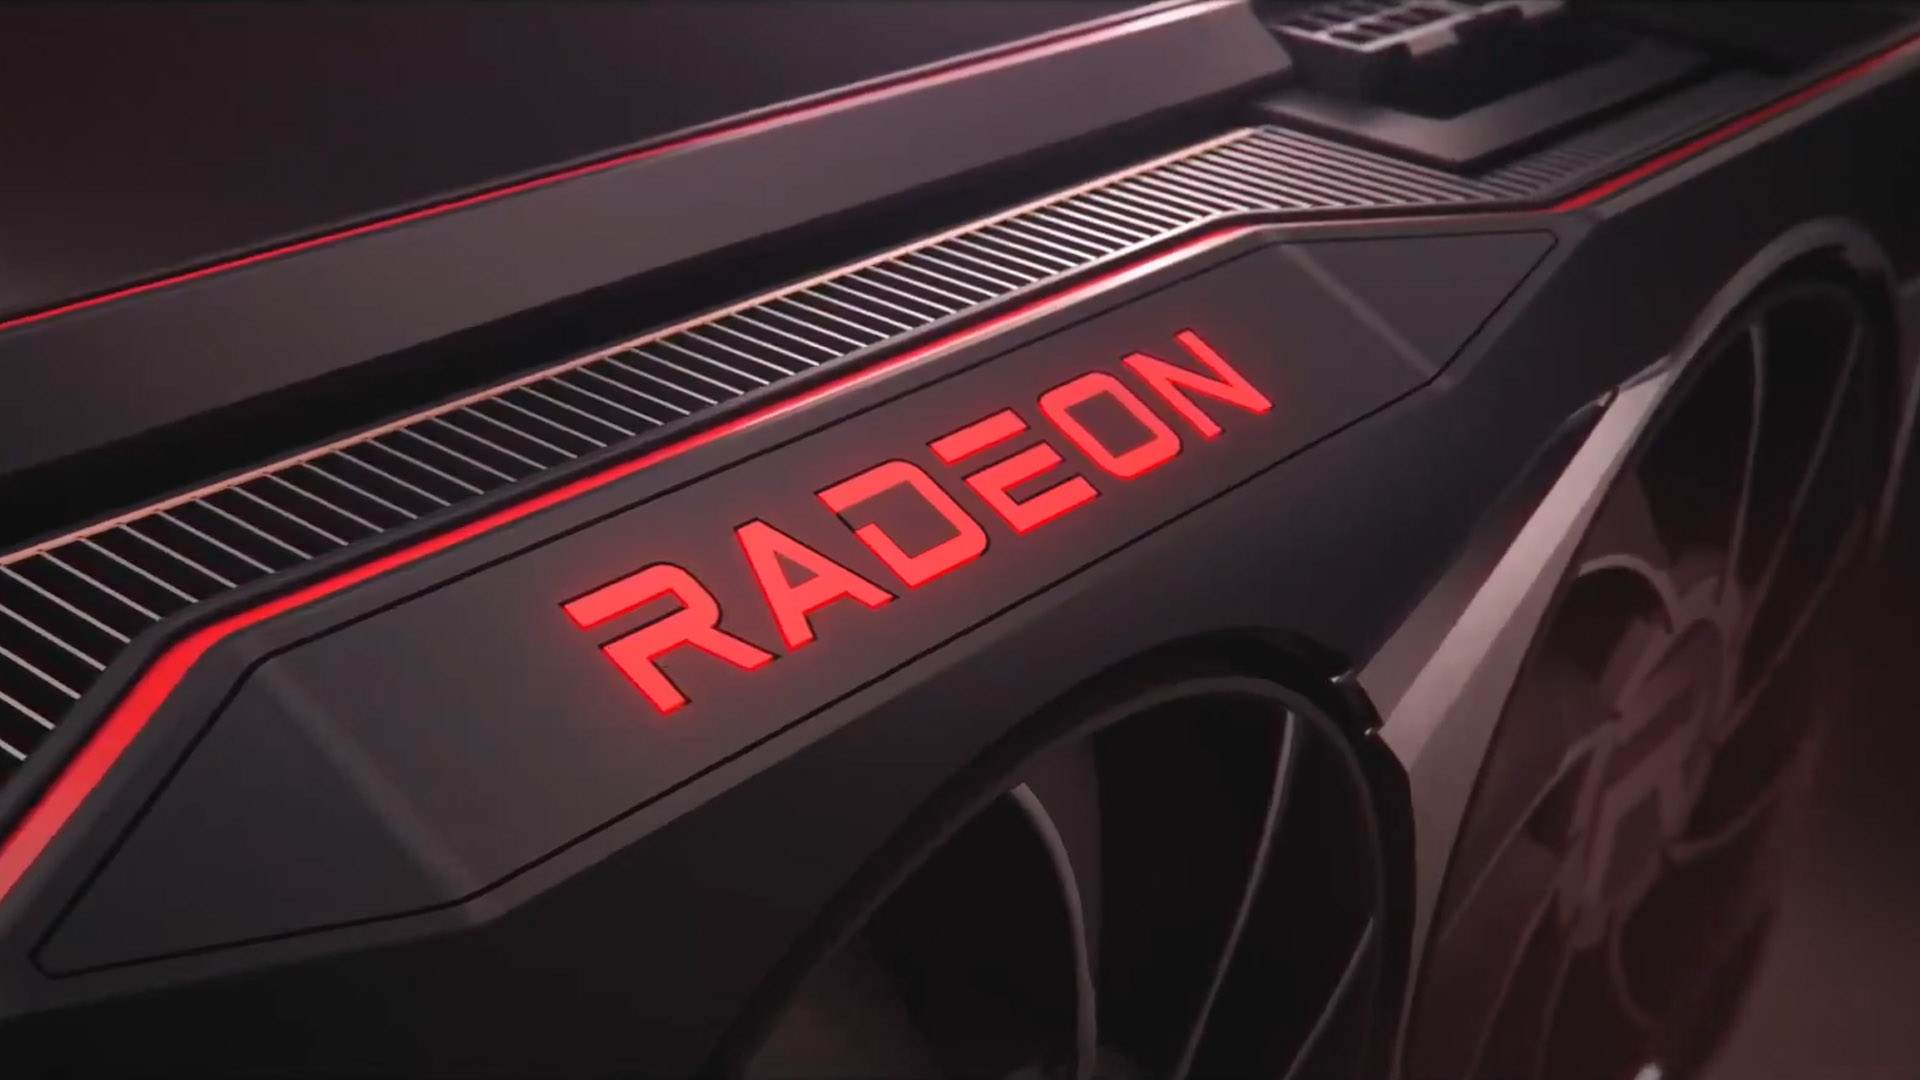 Anunci de l'Amd Radeon Rx 6000 2